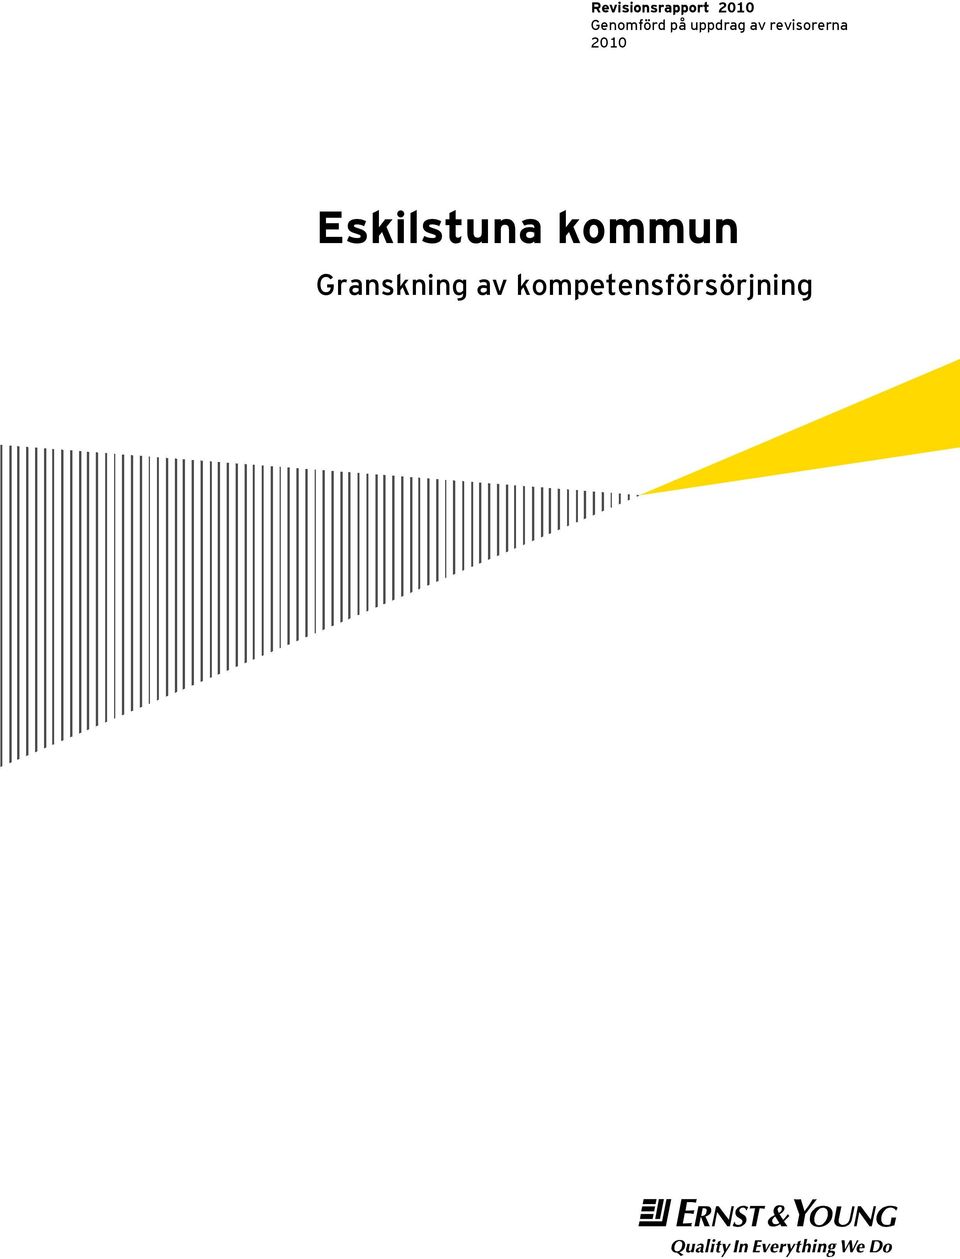 revisorerna 2010 Eskilstuna